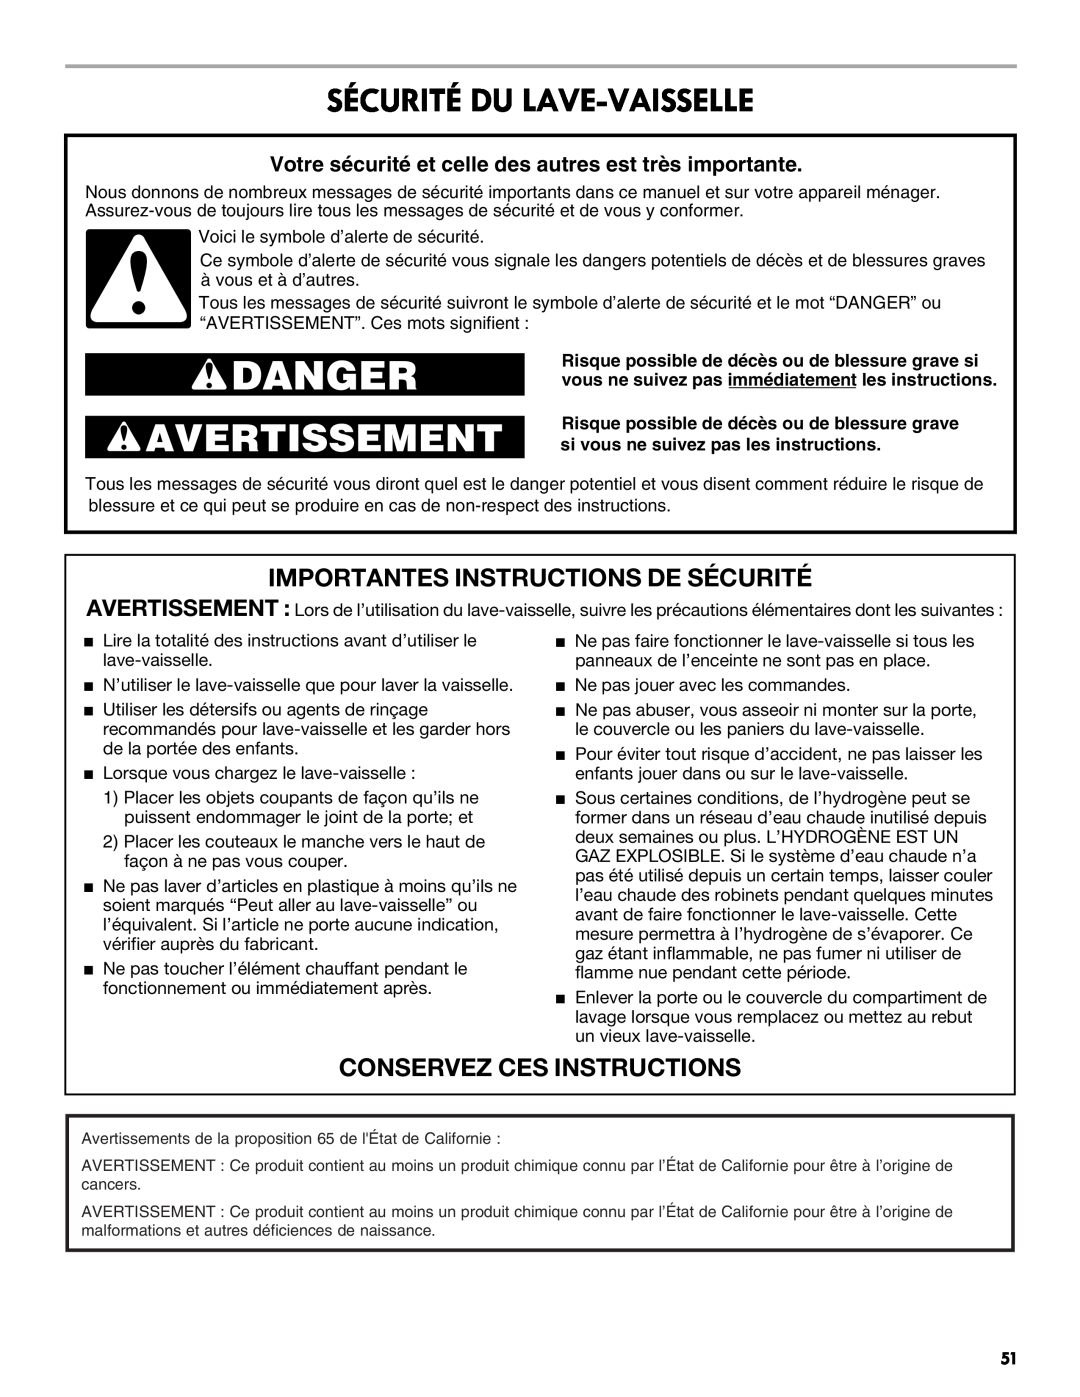 Kenmore 665.1301 manual Danger, Avertissement, Sécurité Du Lave-Vaisselle, Importantes Instructions De Sécurité 